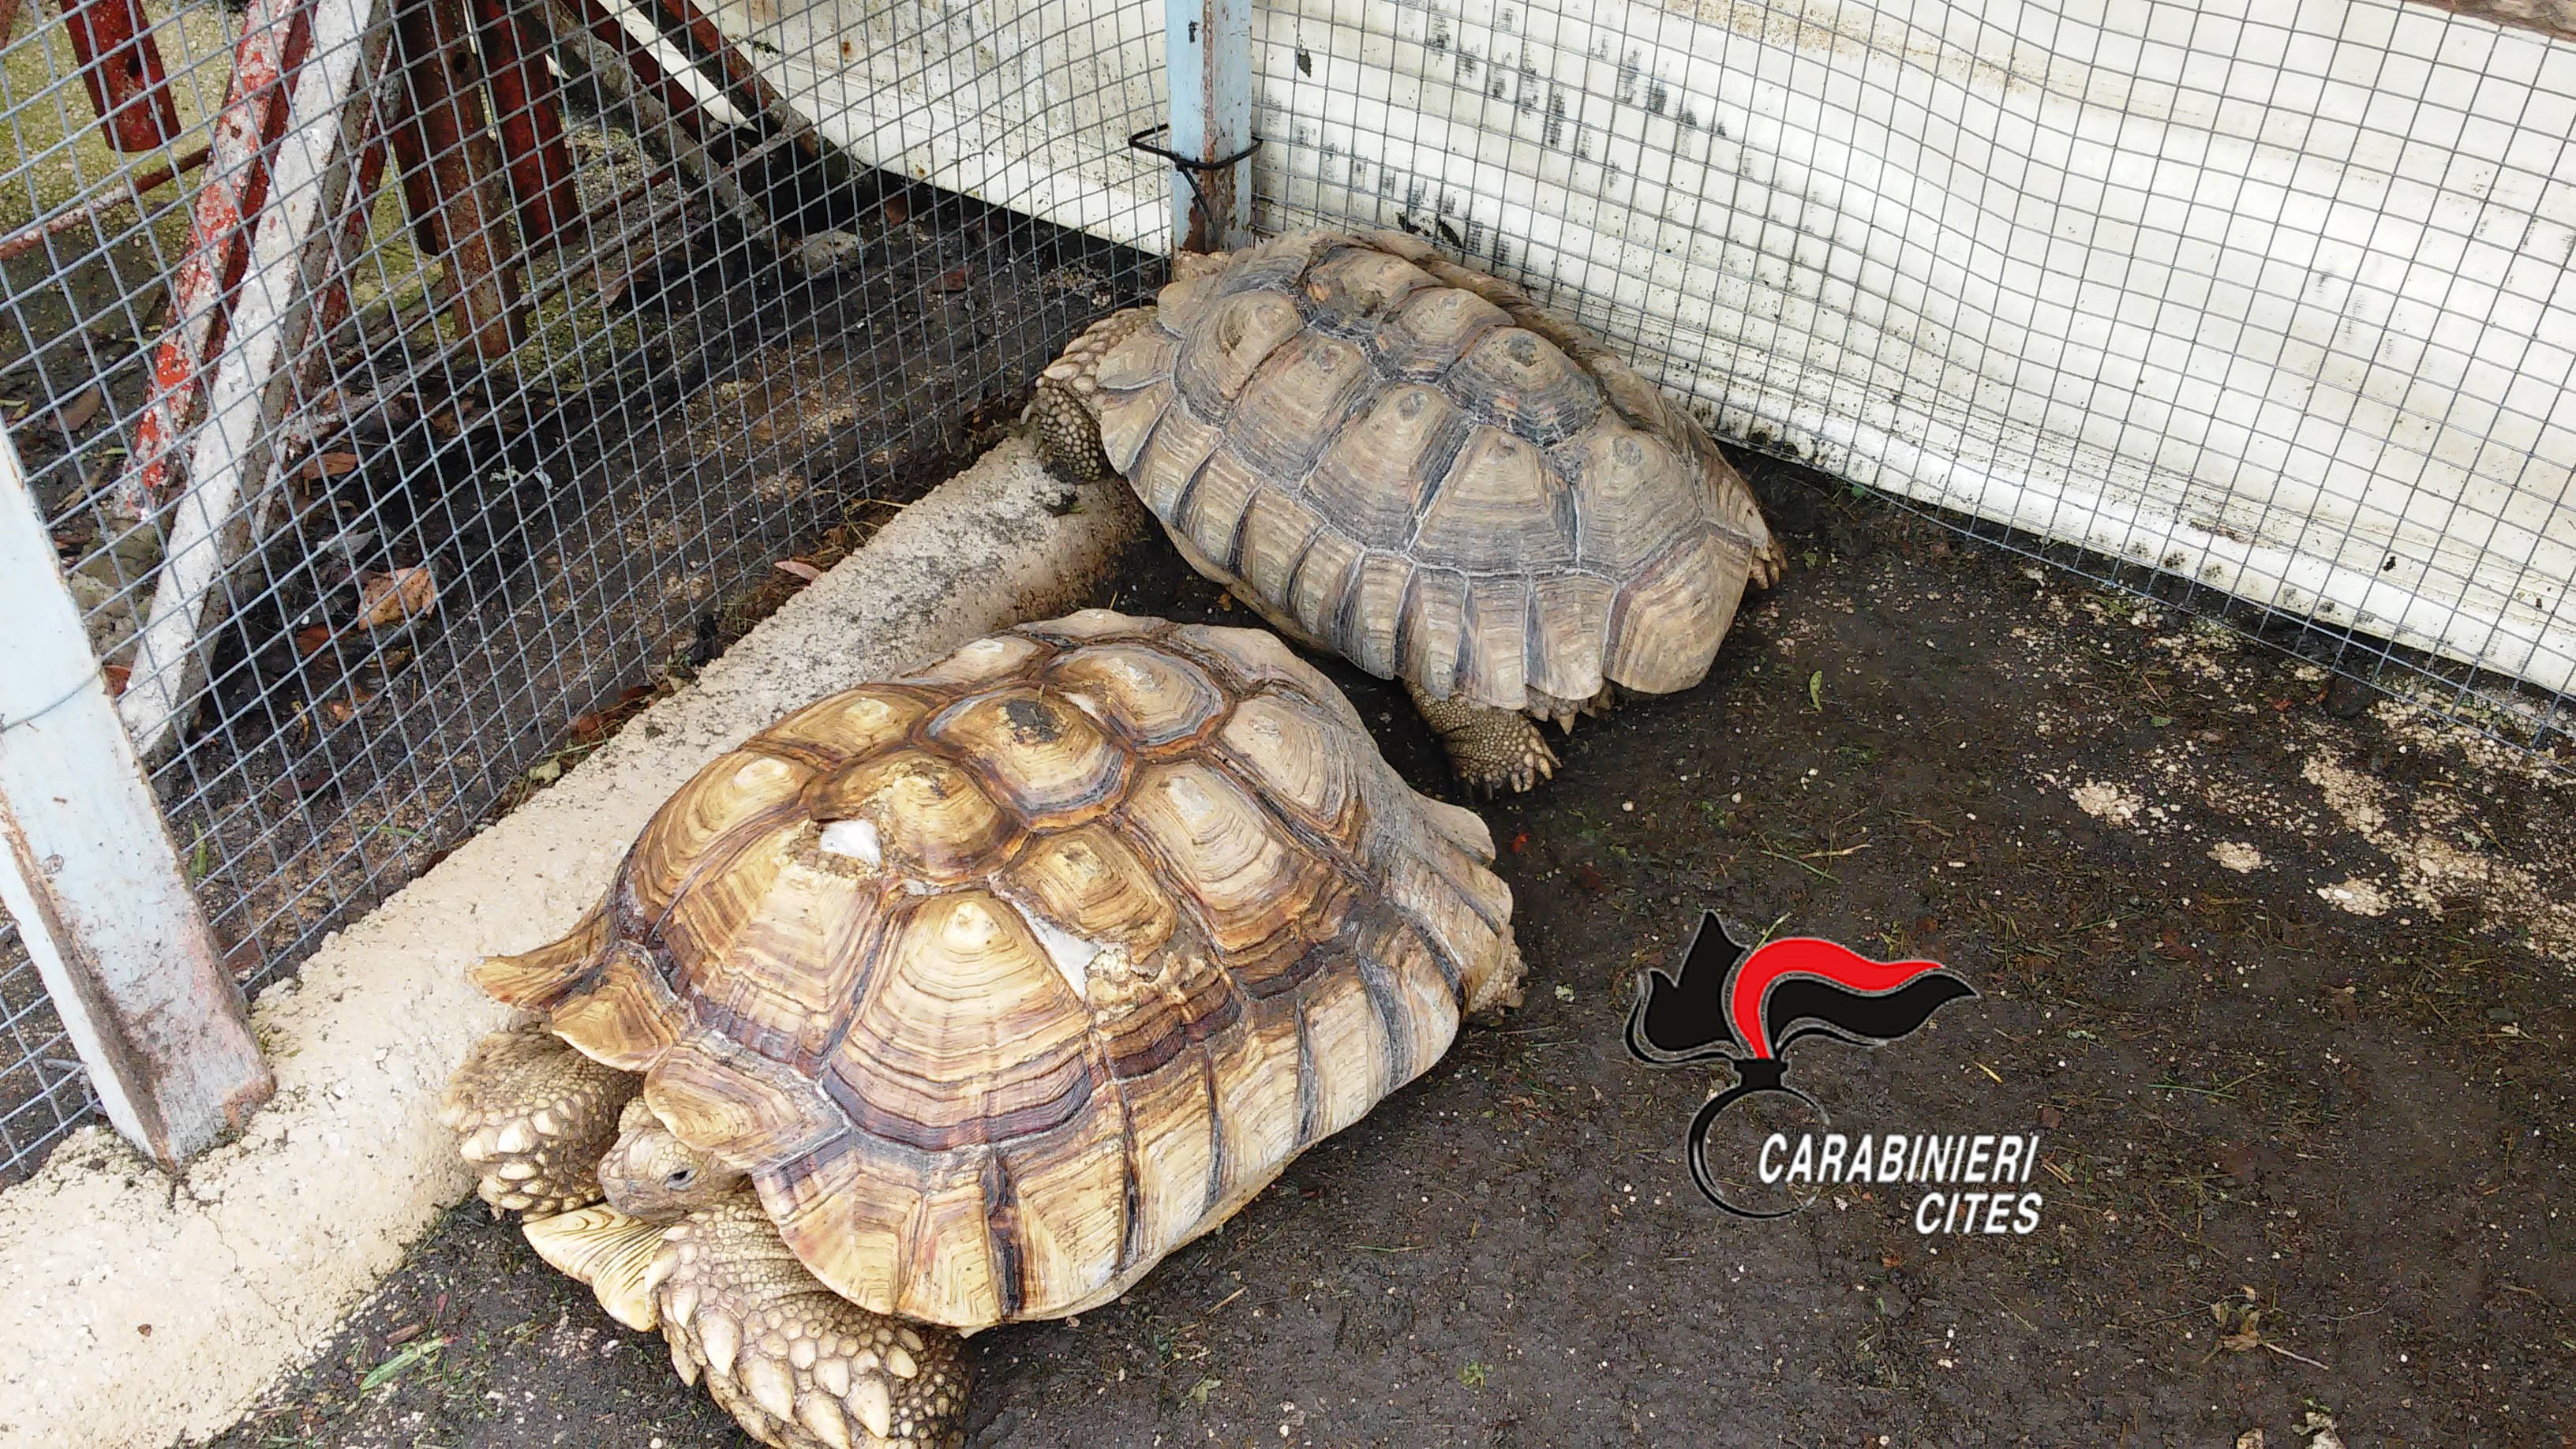 Somma Vesuviana: coniugi nascondevano in casa 5 tartarughe a rischio estinzione